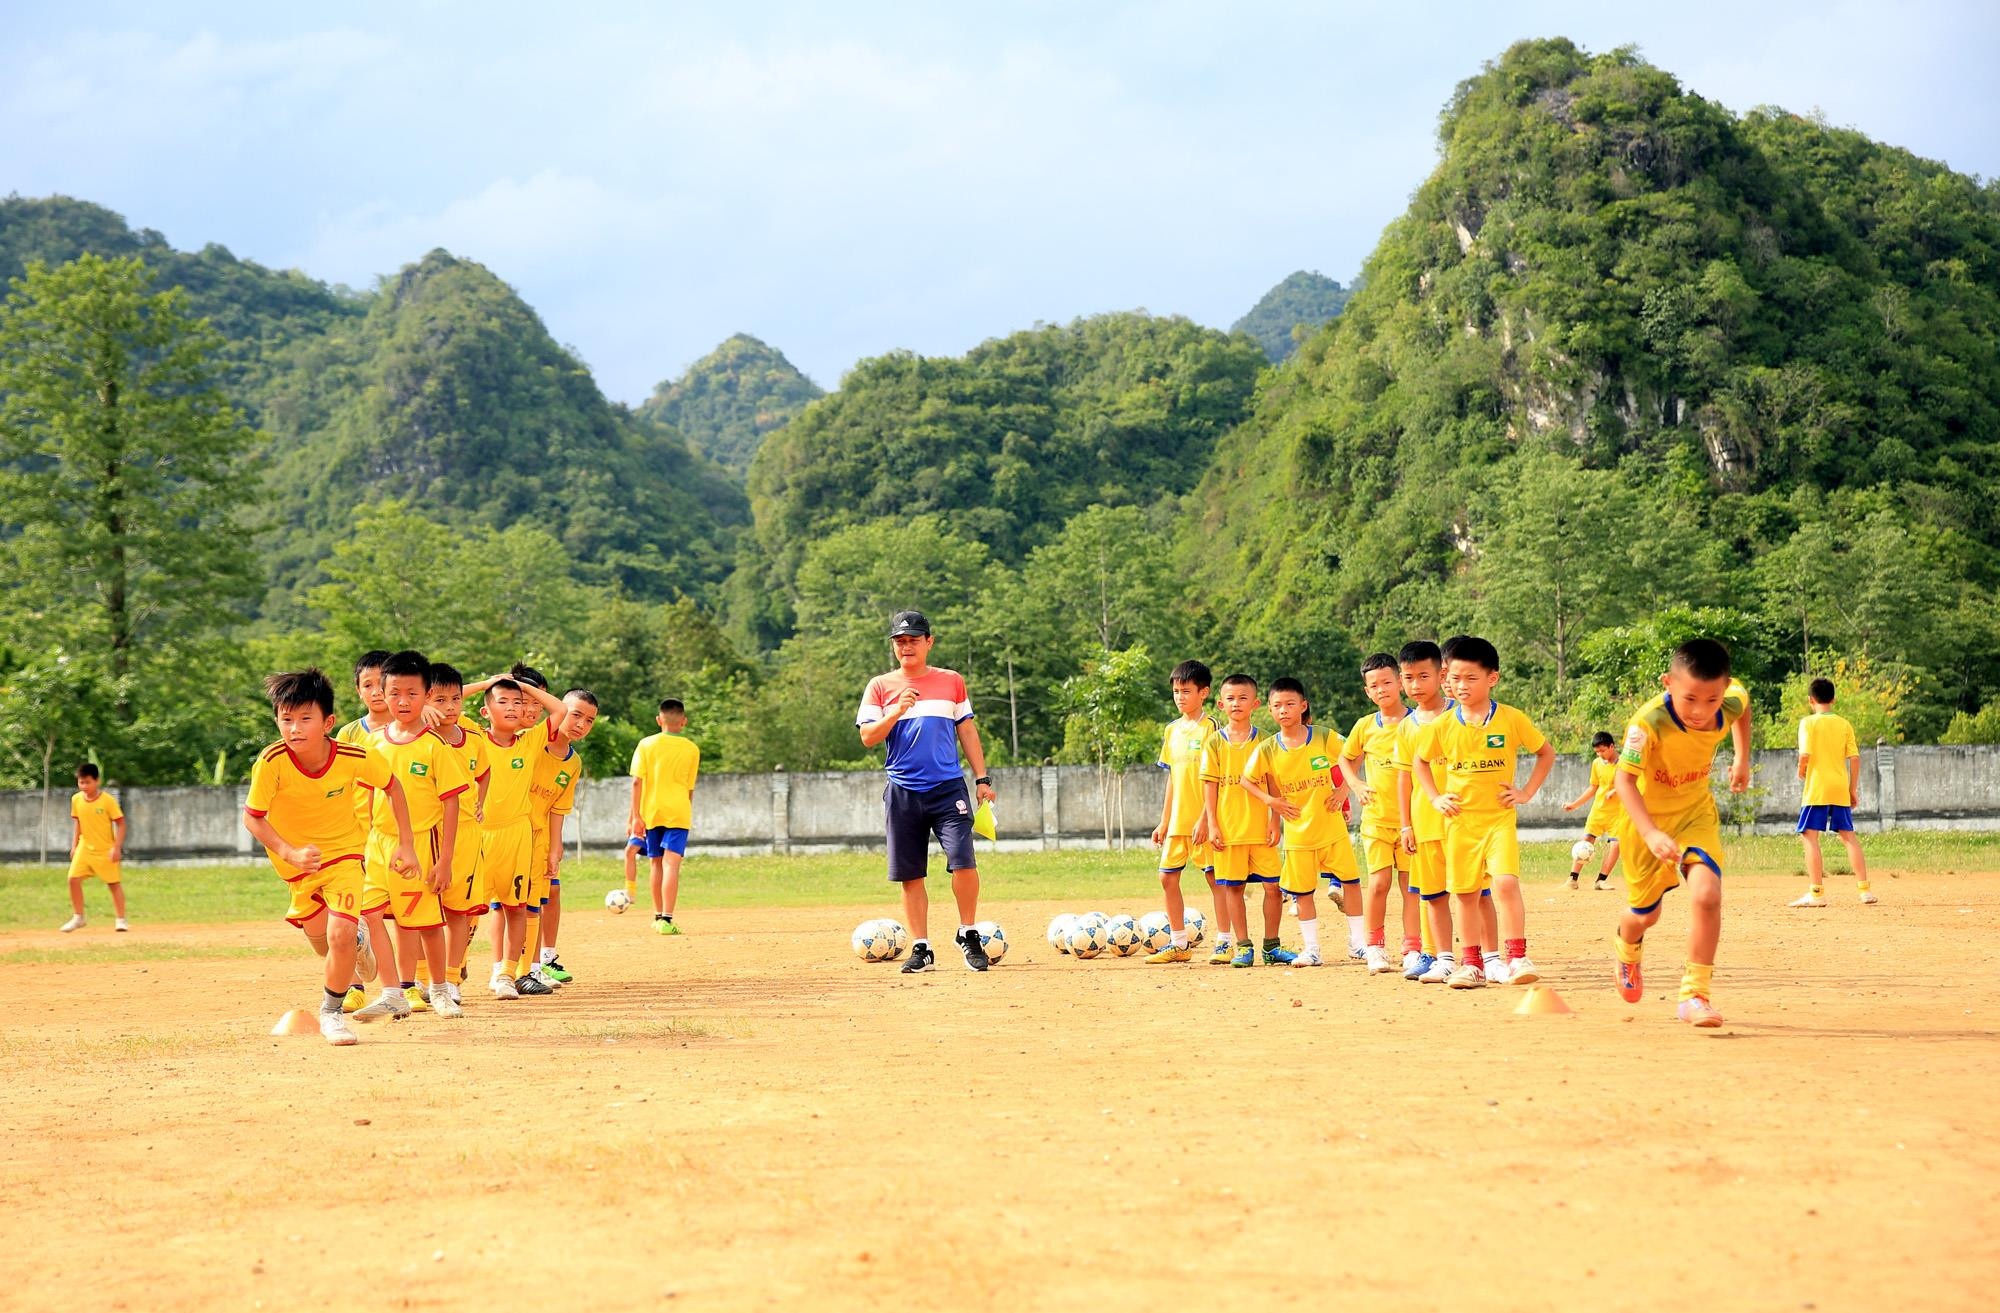 Giải Bóng đá TN-NĐ Cúp Báo Nghệ An năm 2019, huyện Quỳ Hợp sẽ có 2 đội bóng tham gia là đội thiếu niên và đội nhi đồng. Ảnh: Hồ Phương